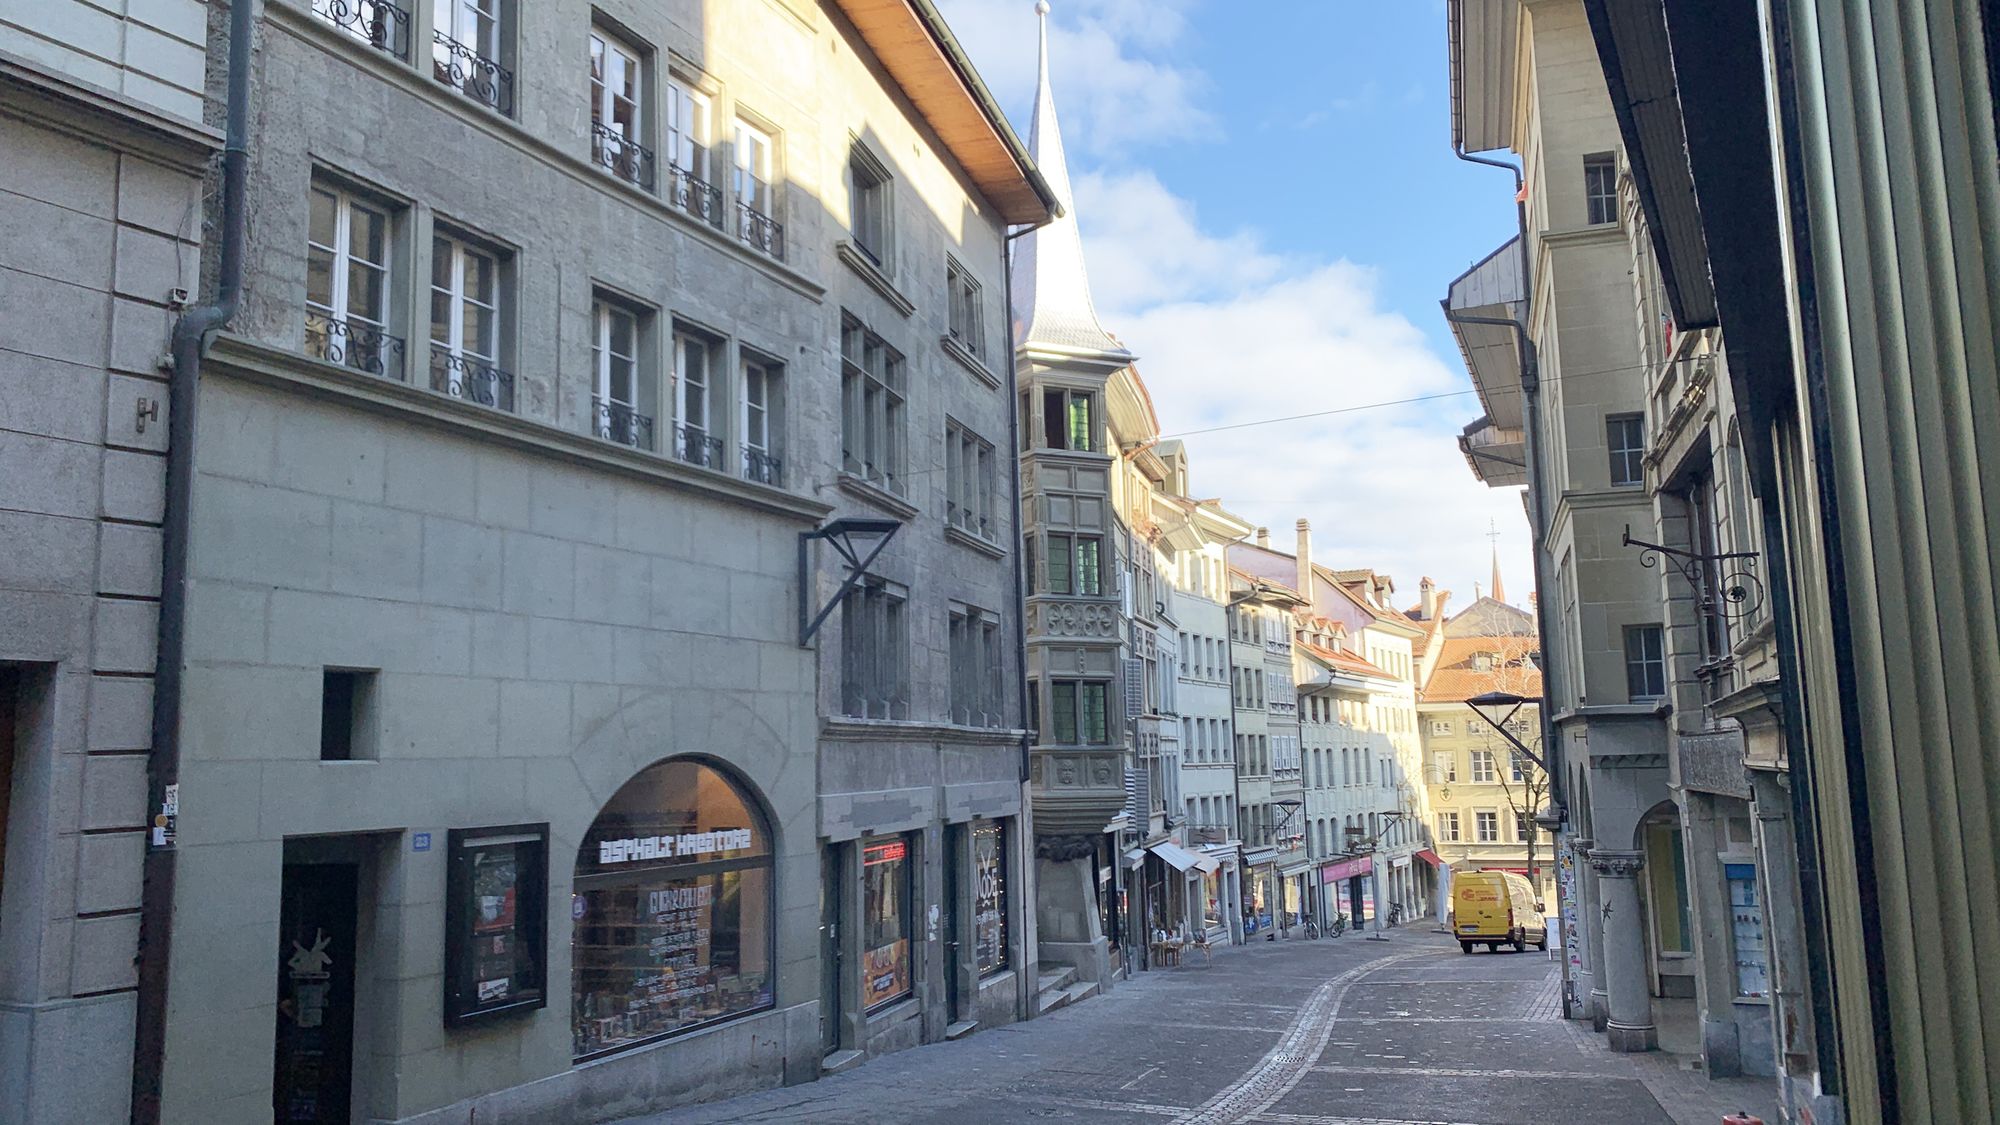 Rue de Lausanne